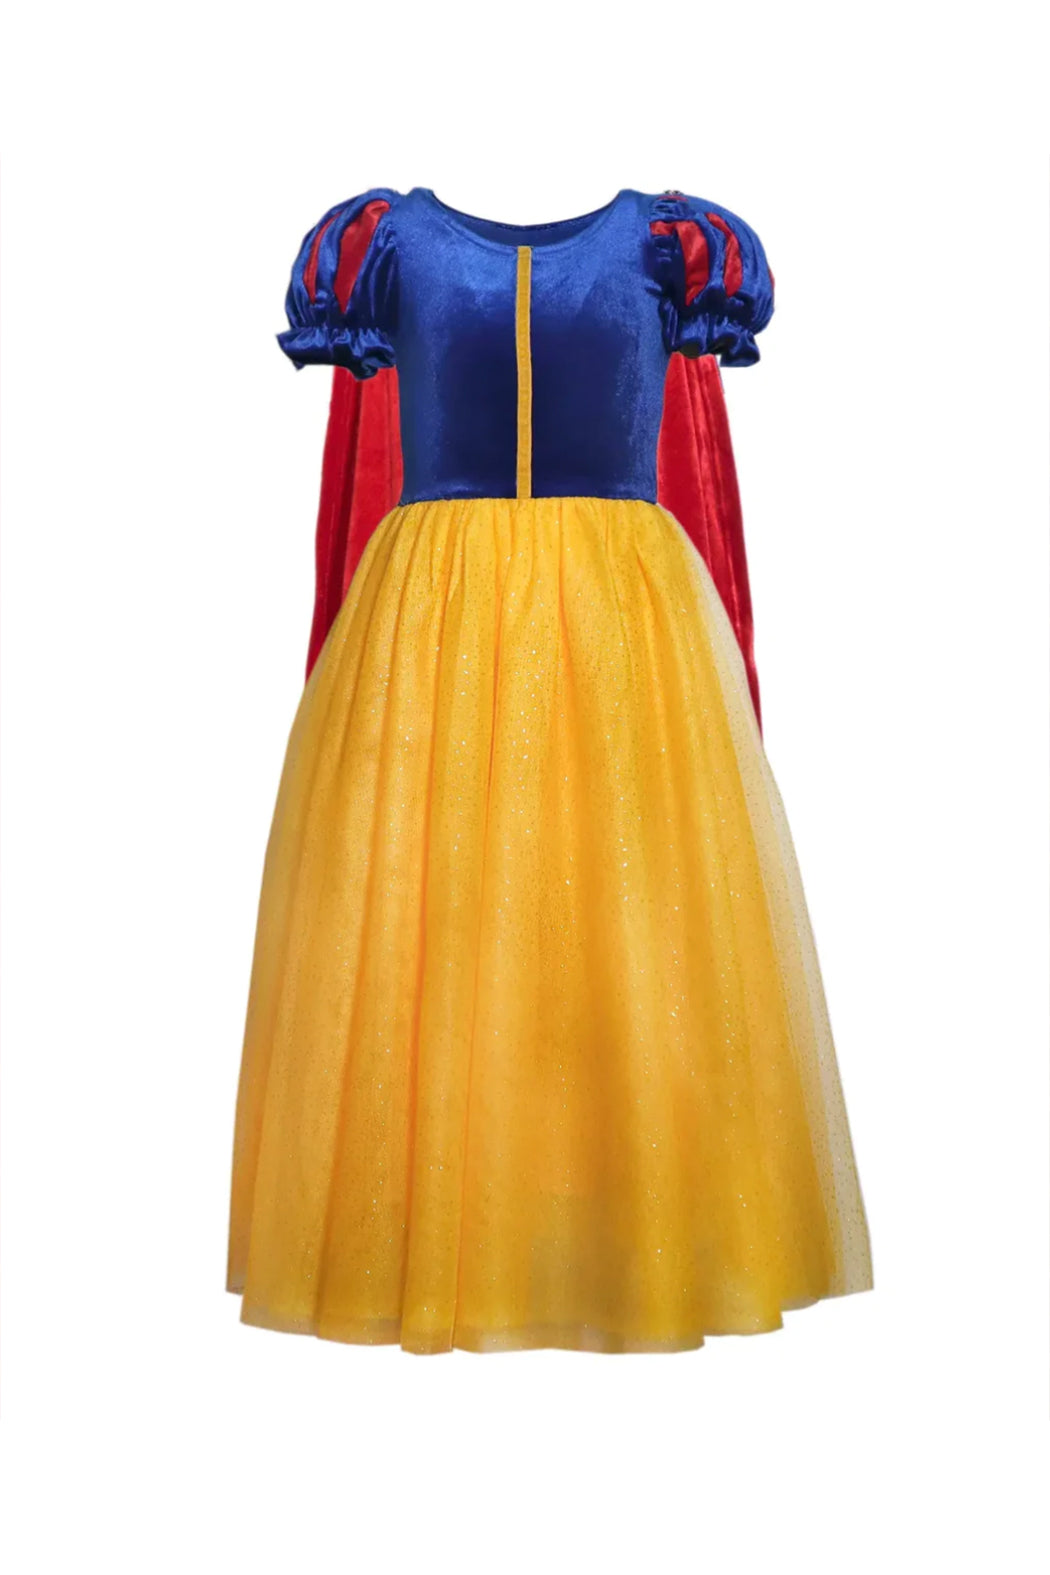 Joy Costumes Fairest Princess Costume Dress